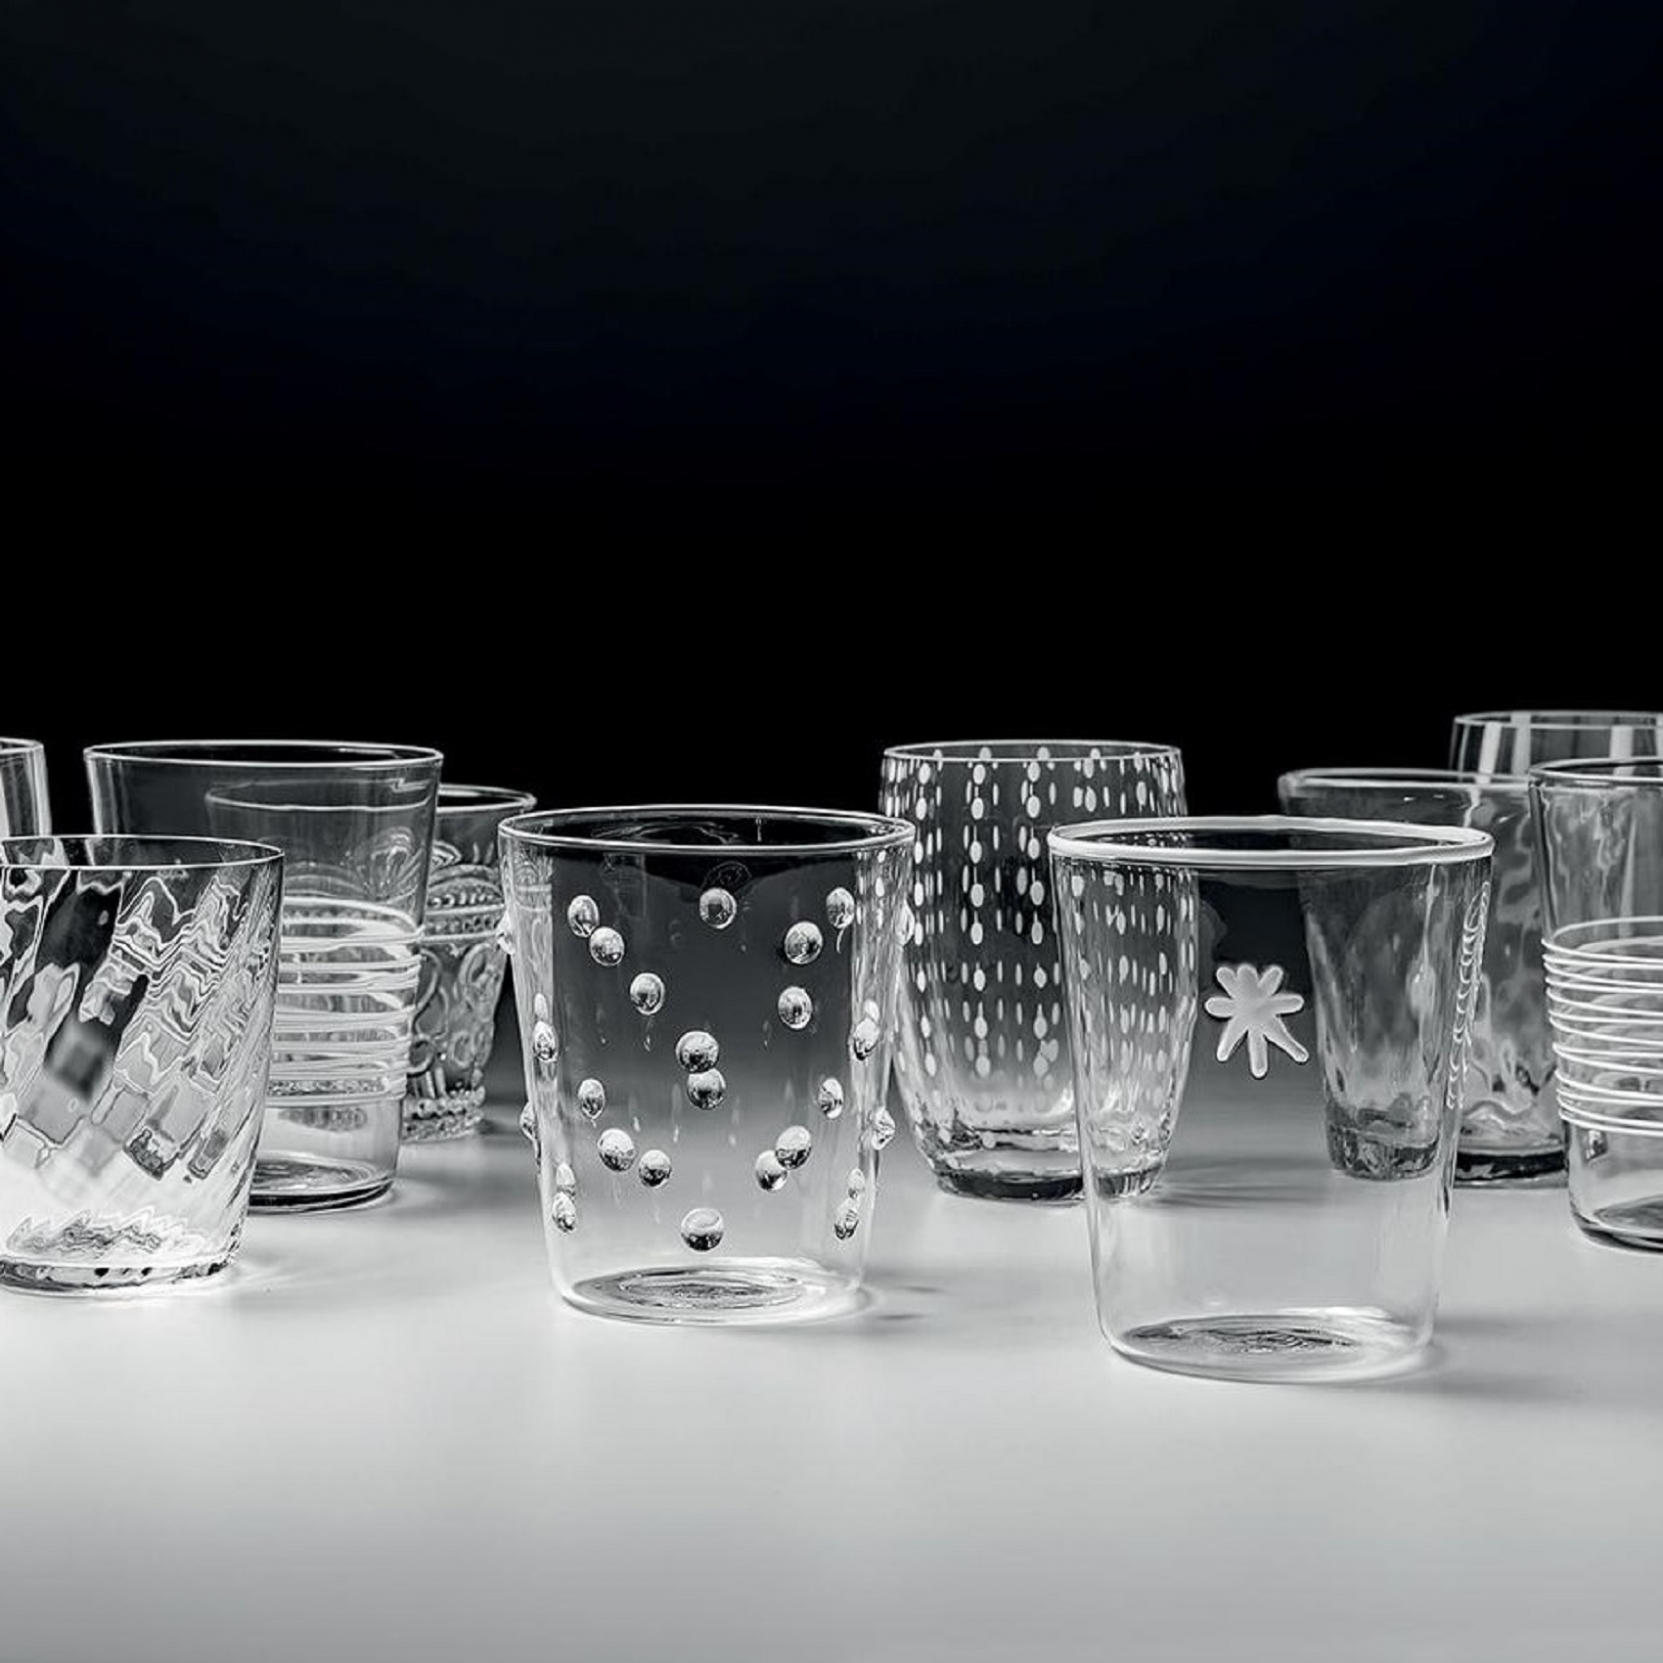 Bicchiere vetro Melting Pot Bicolore Trasparente-Grigio set 6 pezzi